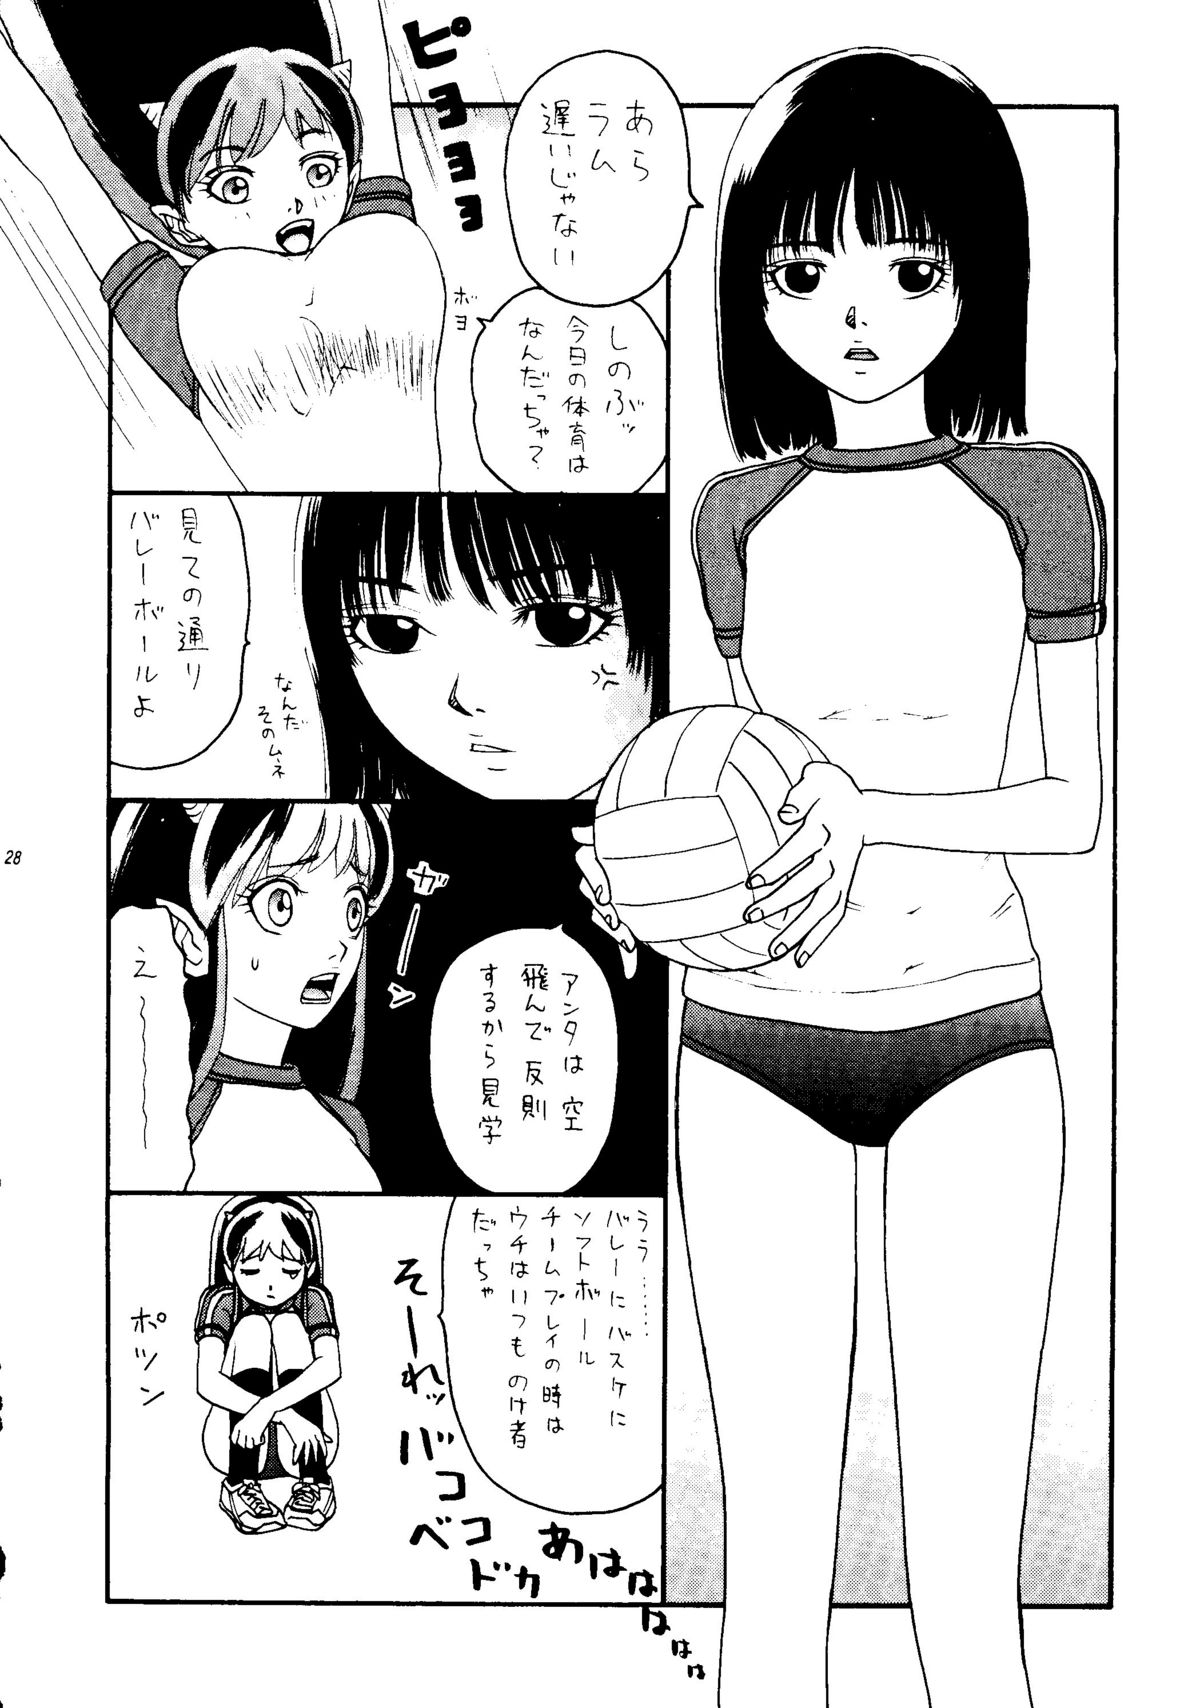 [Otafuku-tei] Nuki Lum 2 (Urusei Yatsura) page 29 full